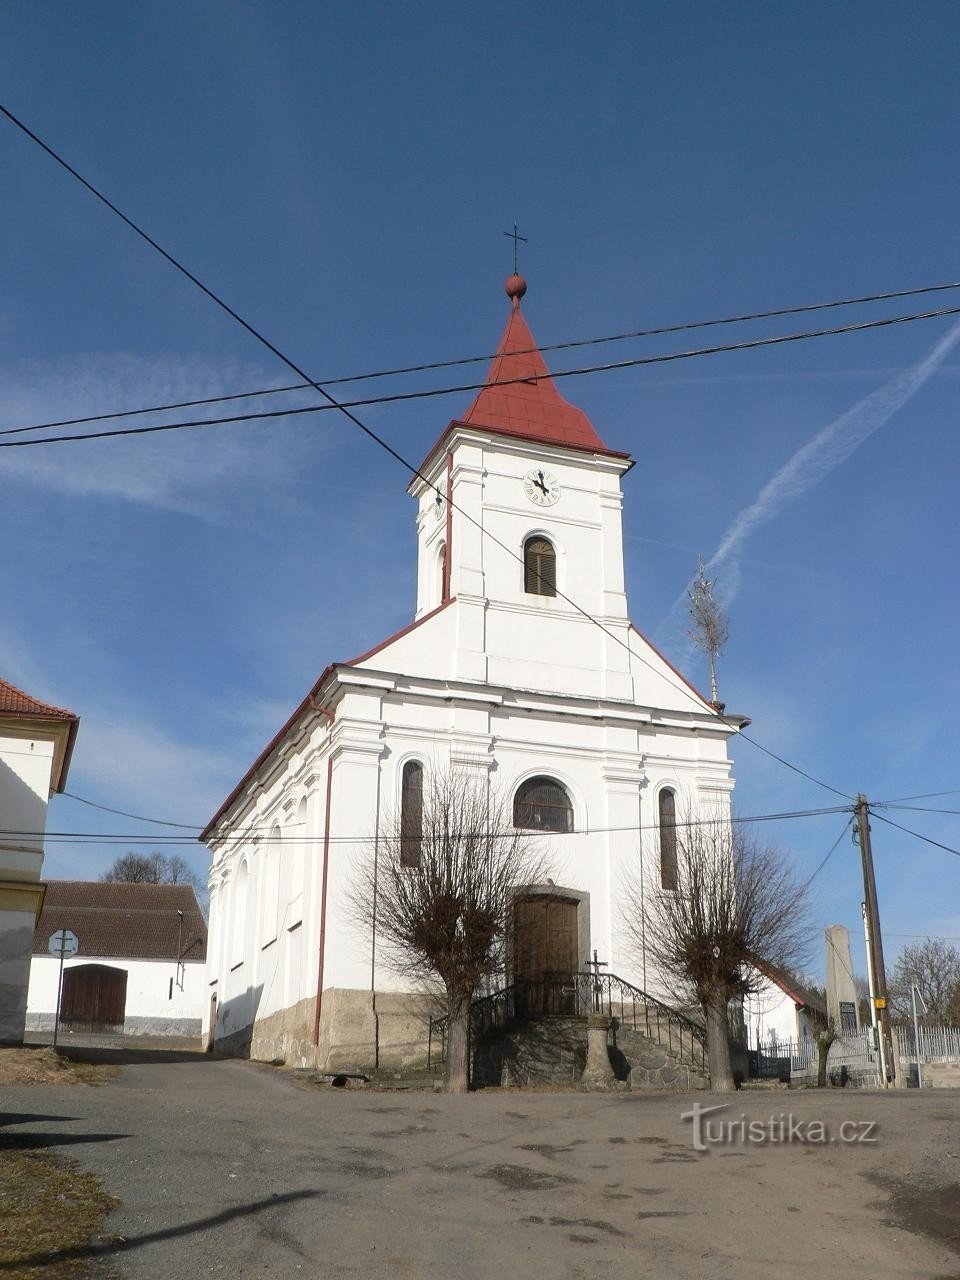 Velenovy, το μπροστινό μέρος της εκκλησίας